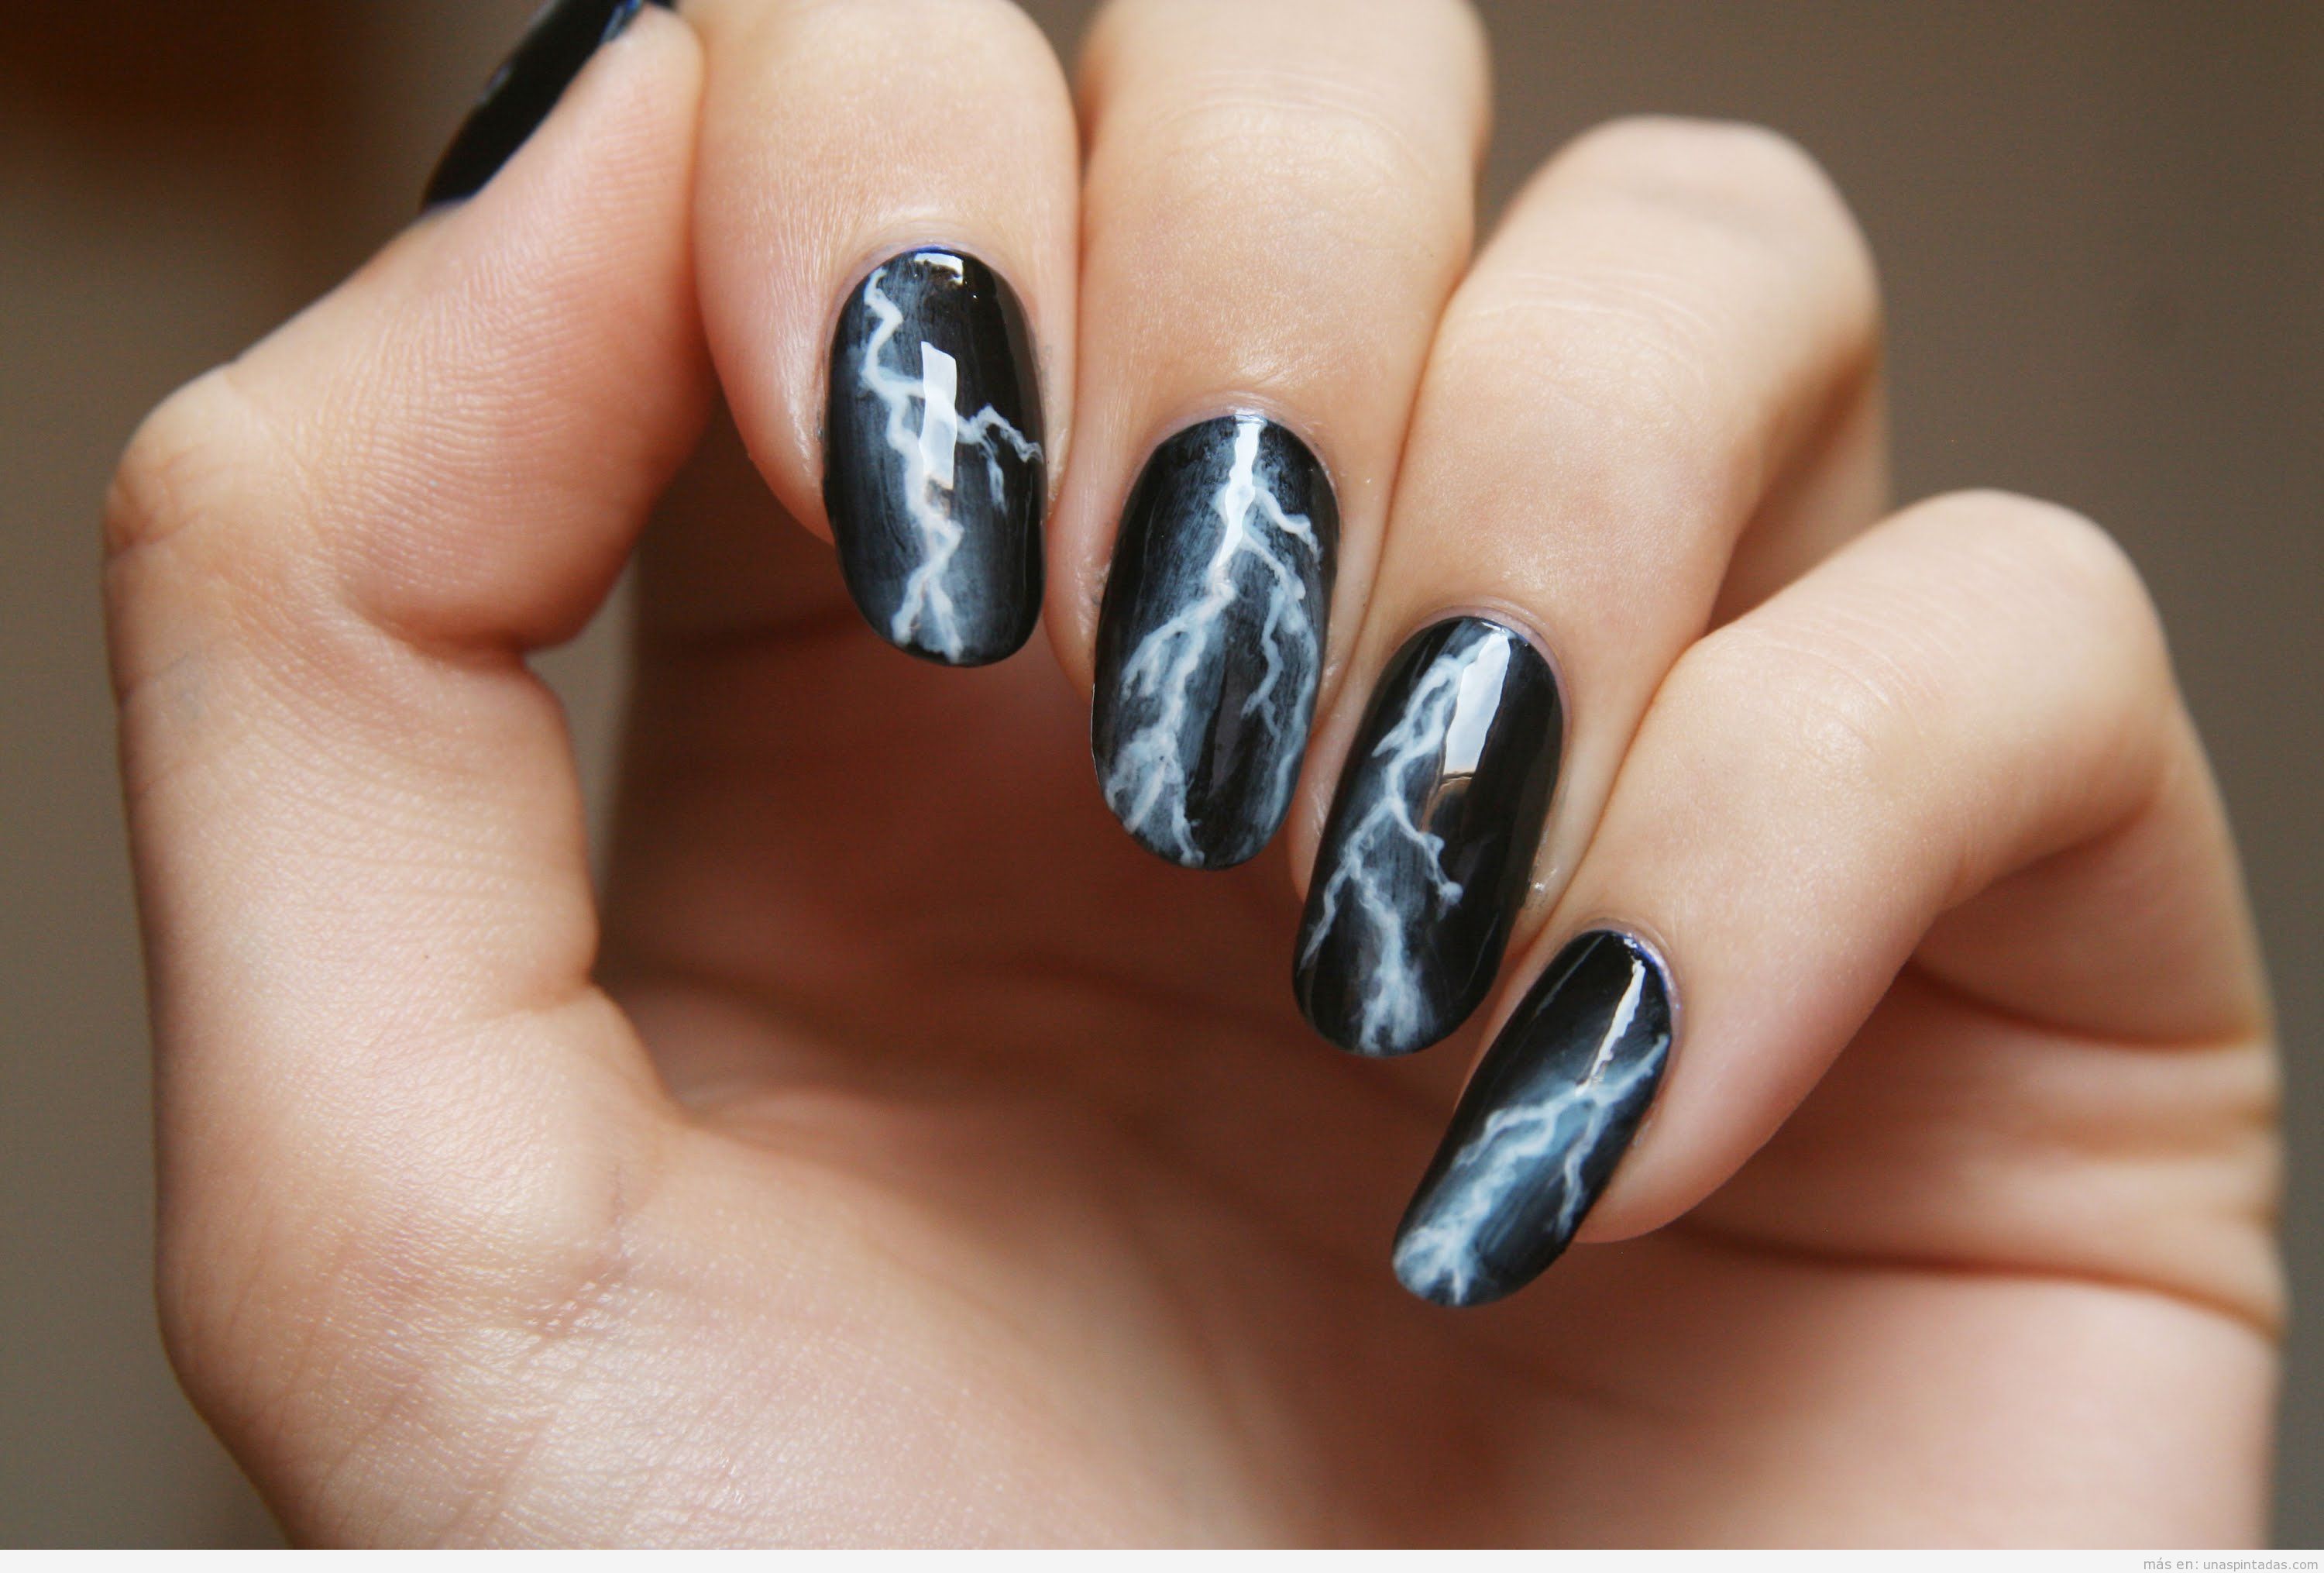 Diseño de uñas góticas en negro con rayos